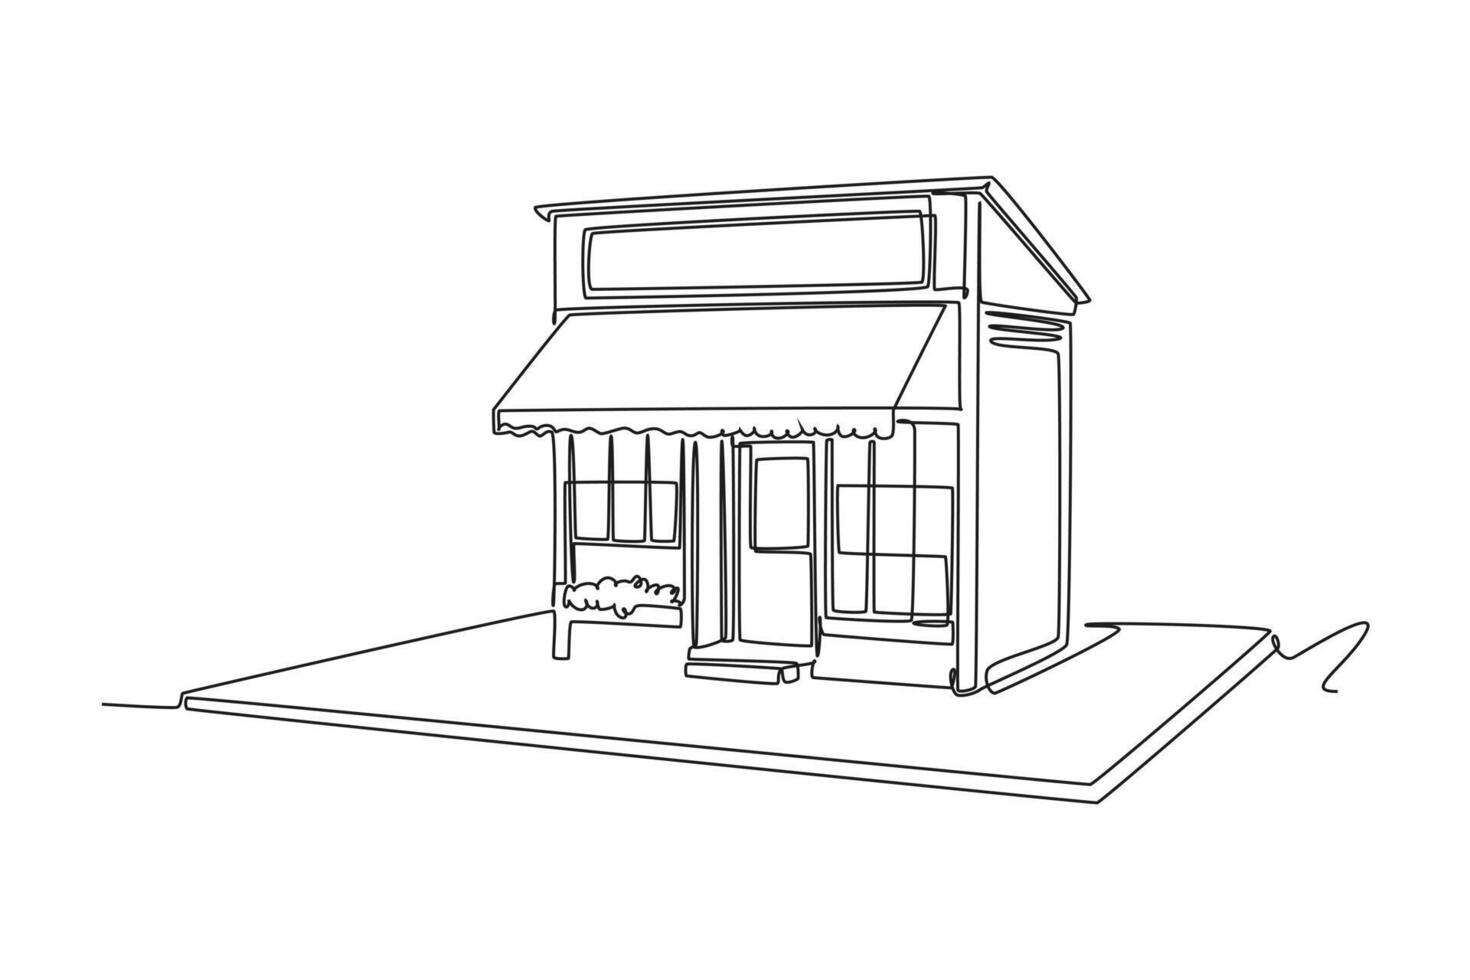 uno continuo linea disegno di carino Casa o piccolo edificio concetto scarabocchio illustrazione vettore